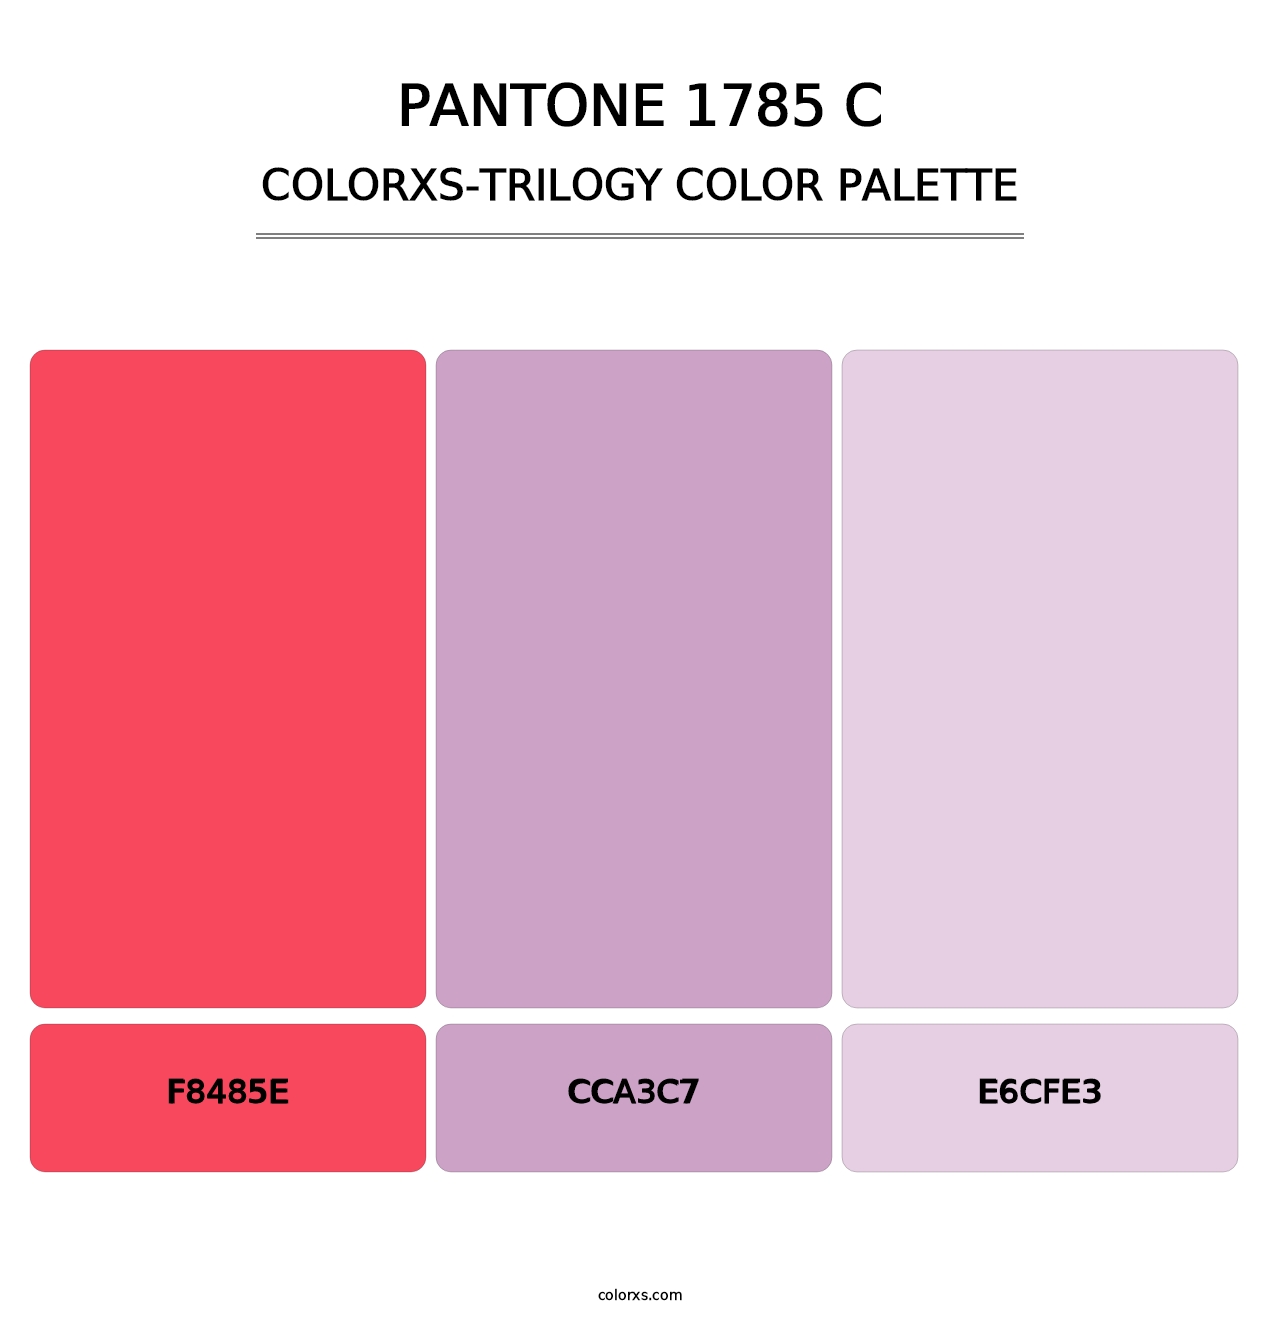 PANTONE 1785 C - Colorxs Trilogy Palette